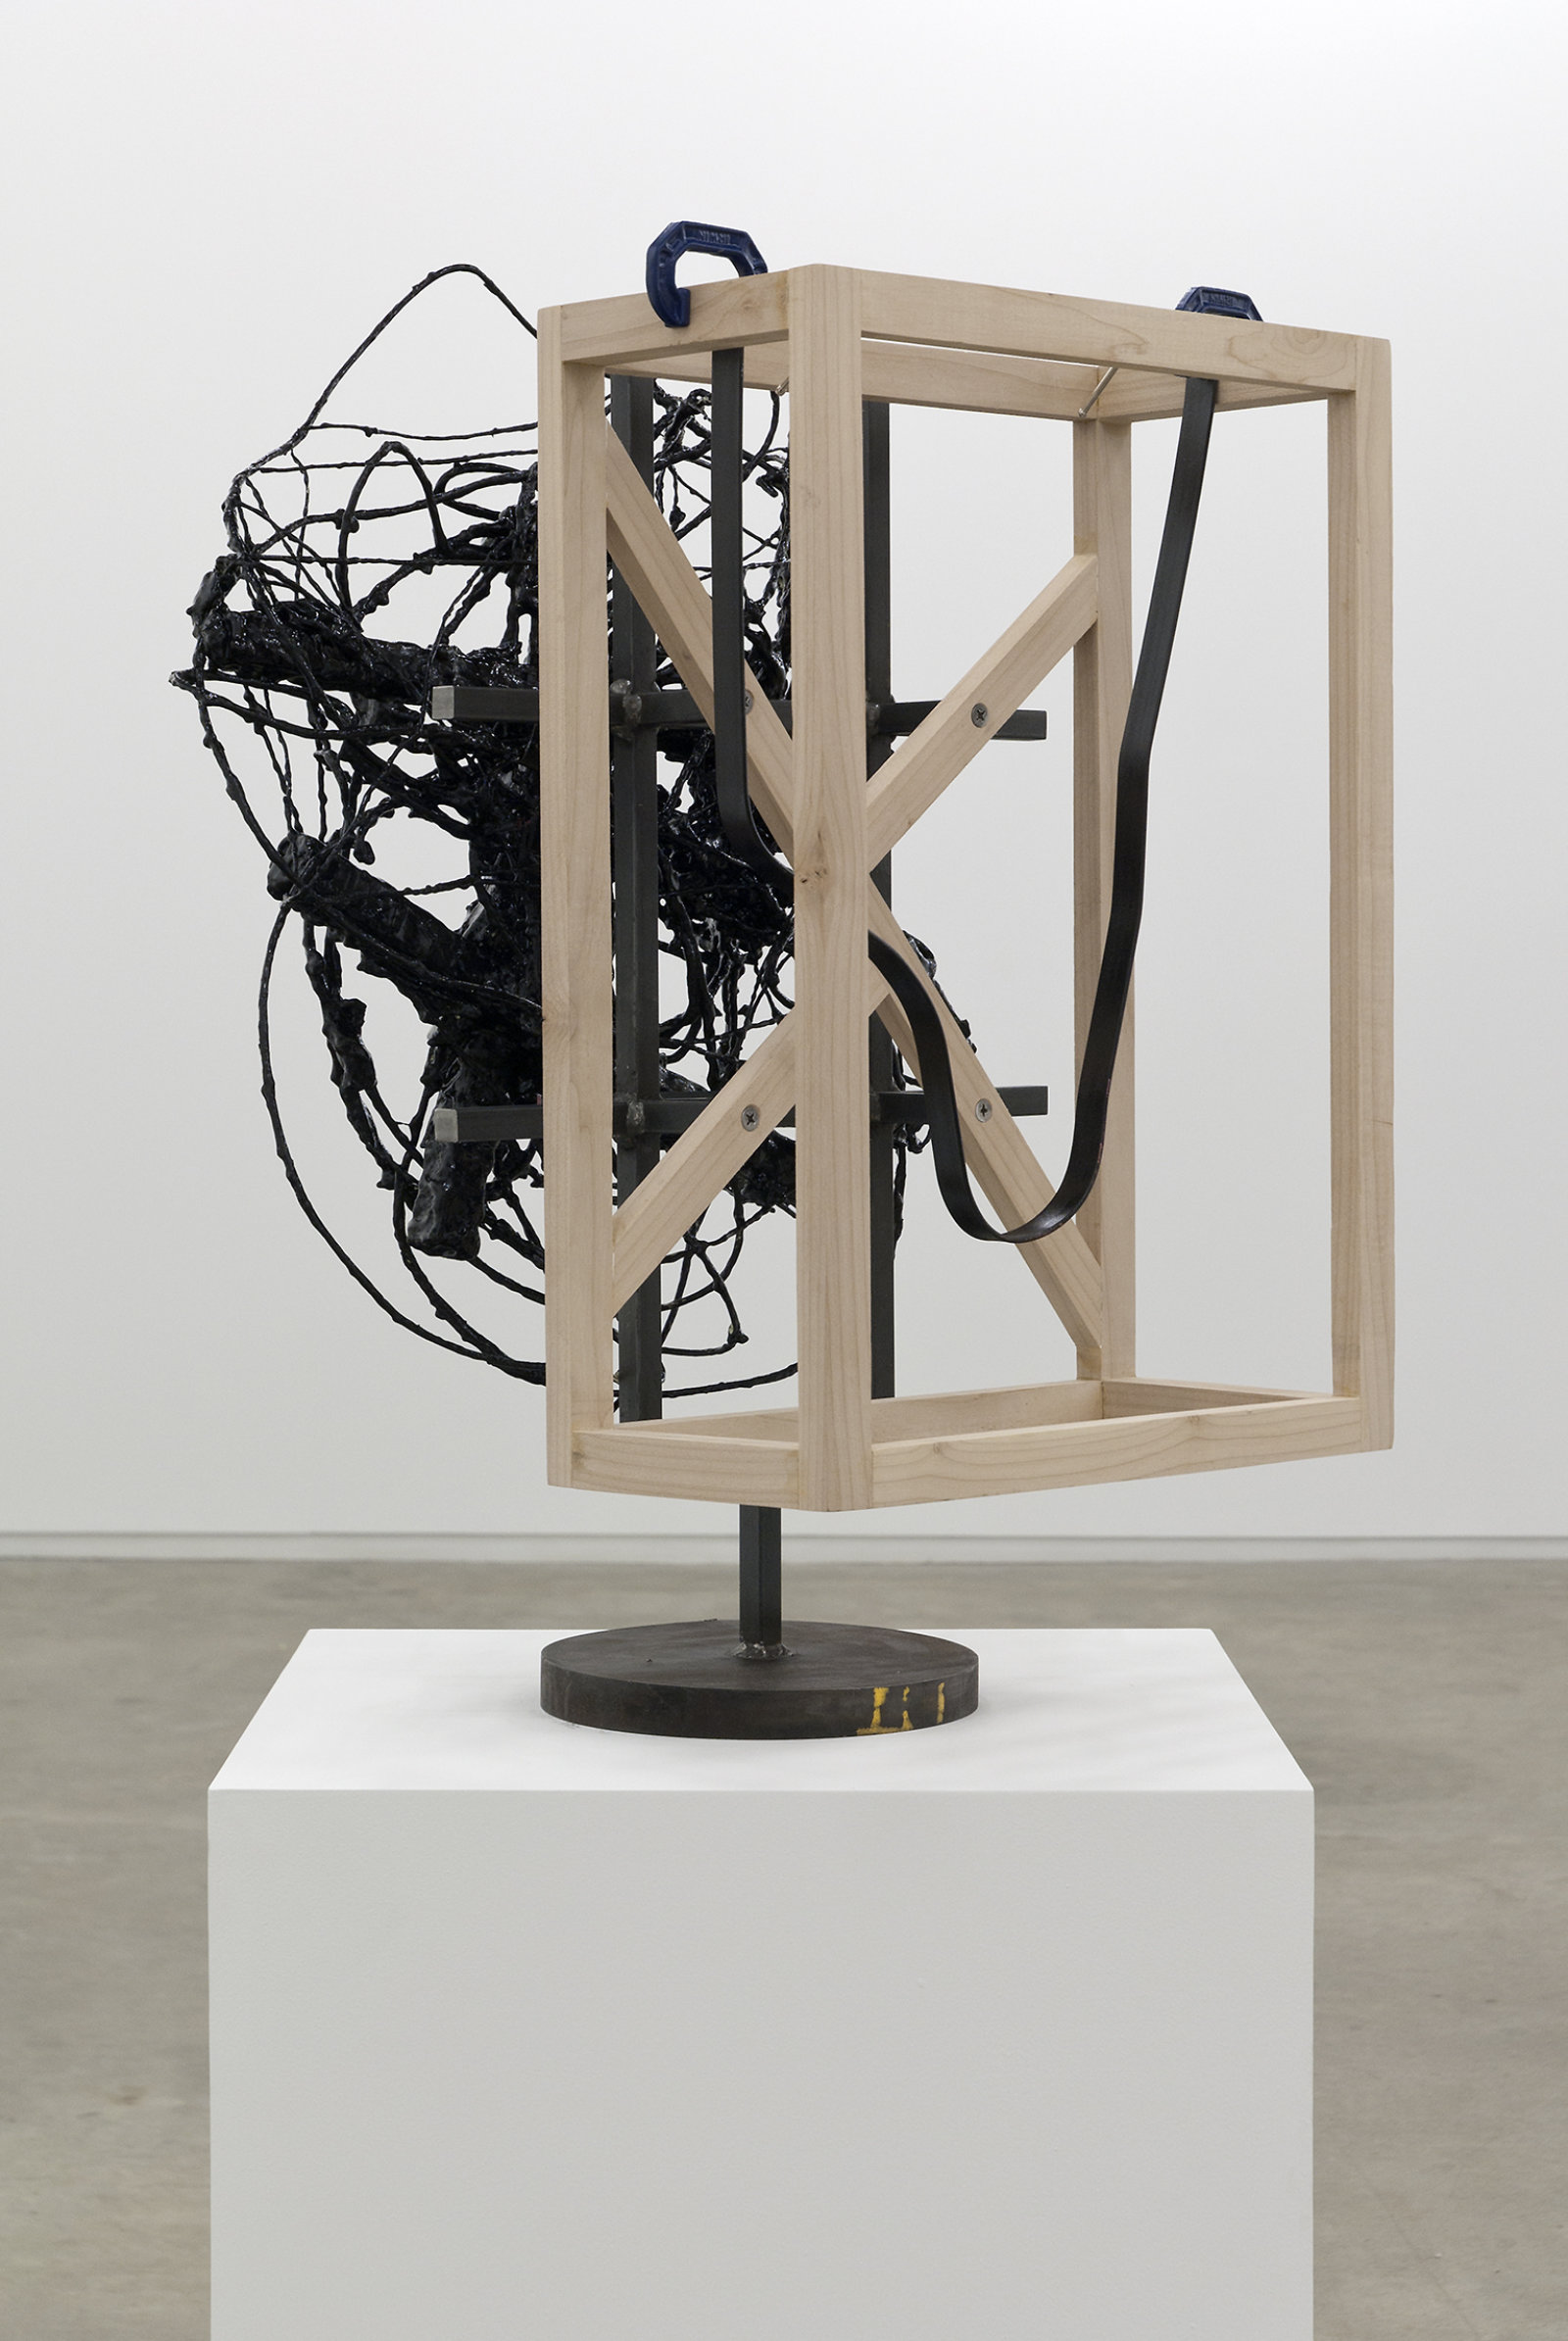 Damian Moppett, Untitled (detail), 2010, steel, wood, wire, plaster, enamel, clamps, 27 x 18 x 18 in. (69 x 46 x 44 cm)